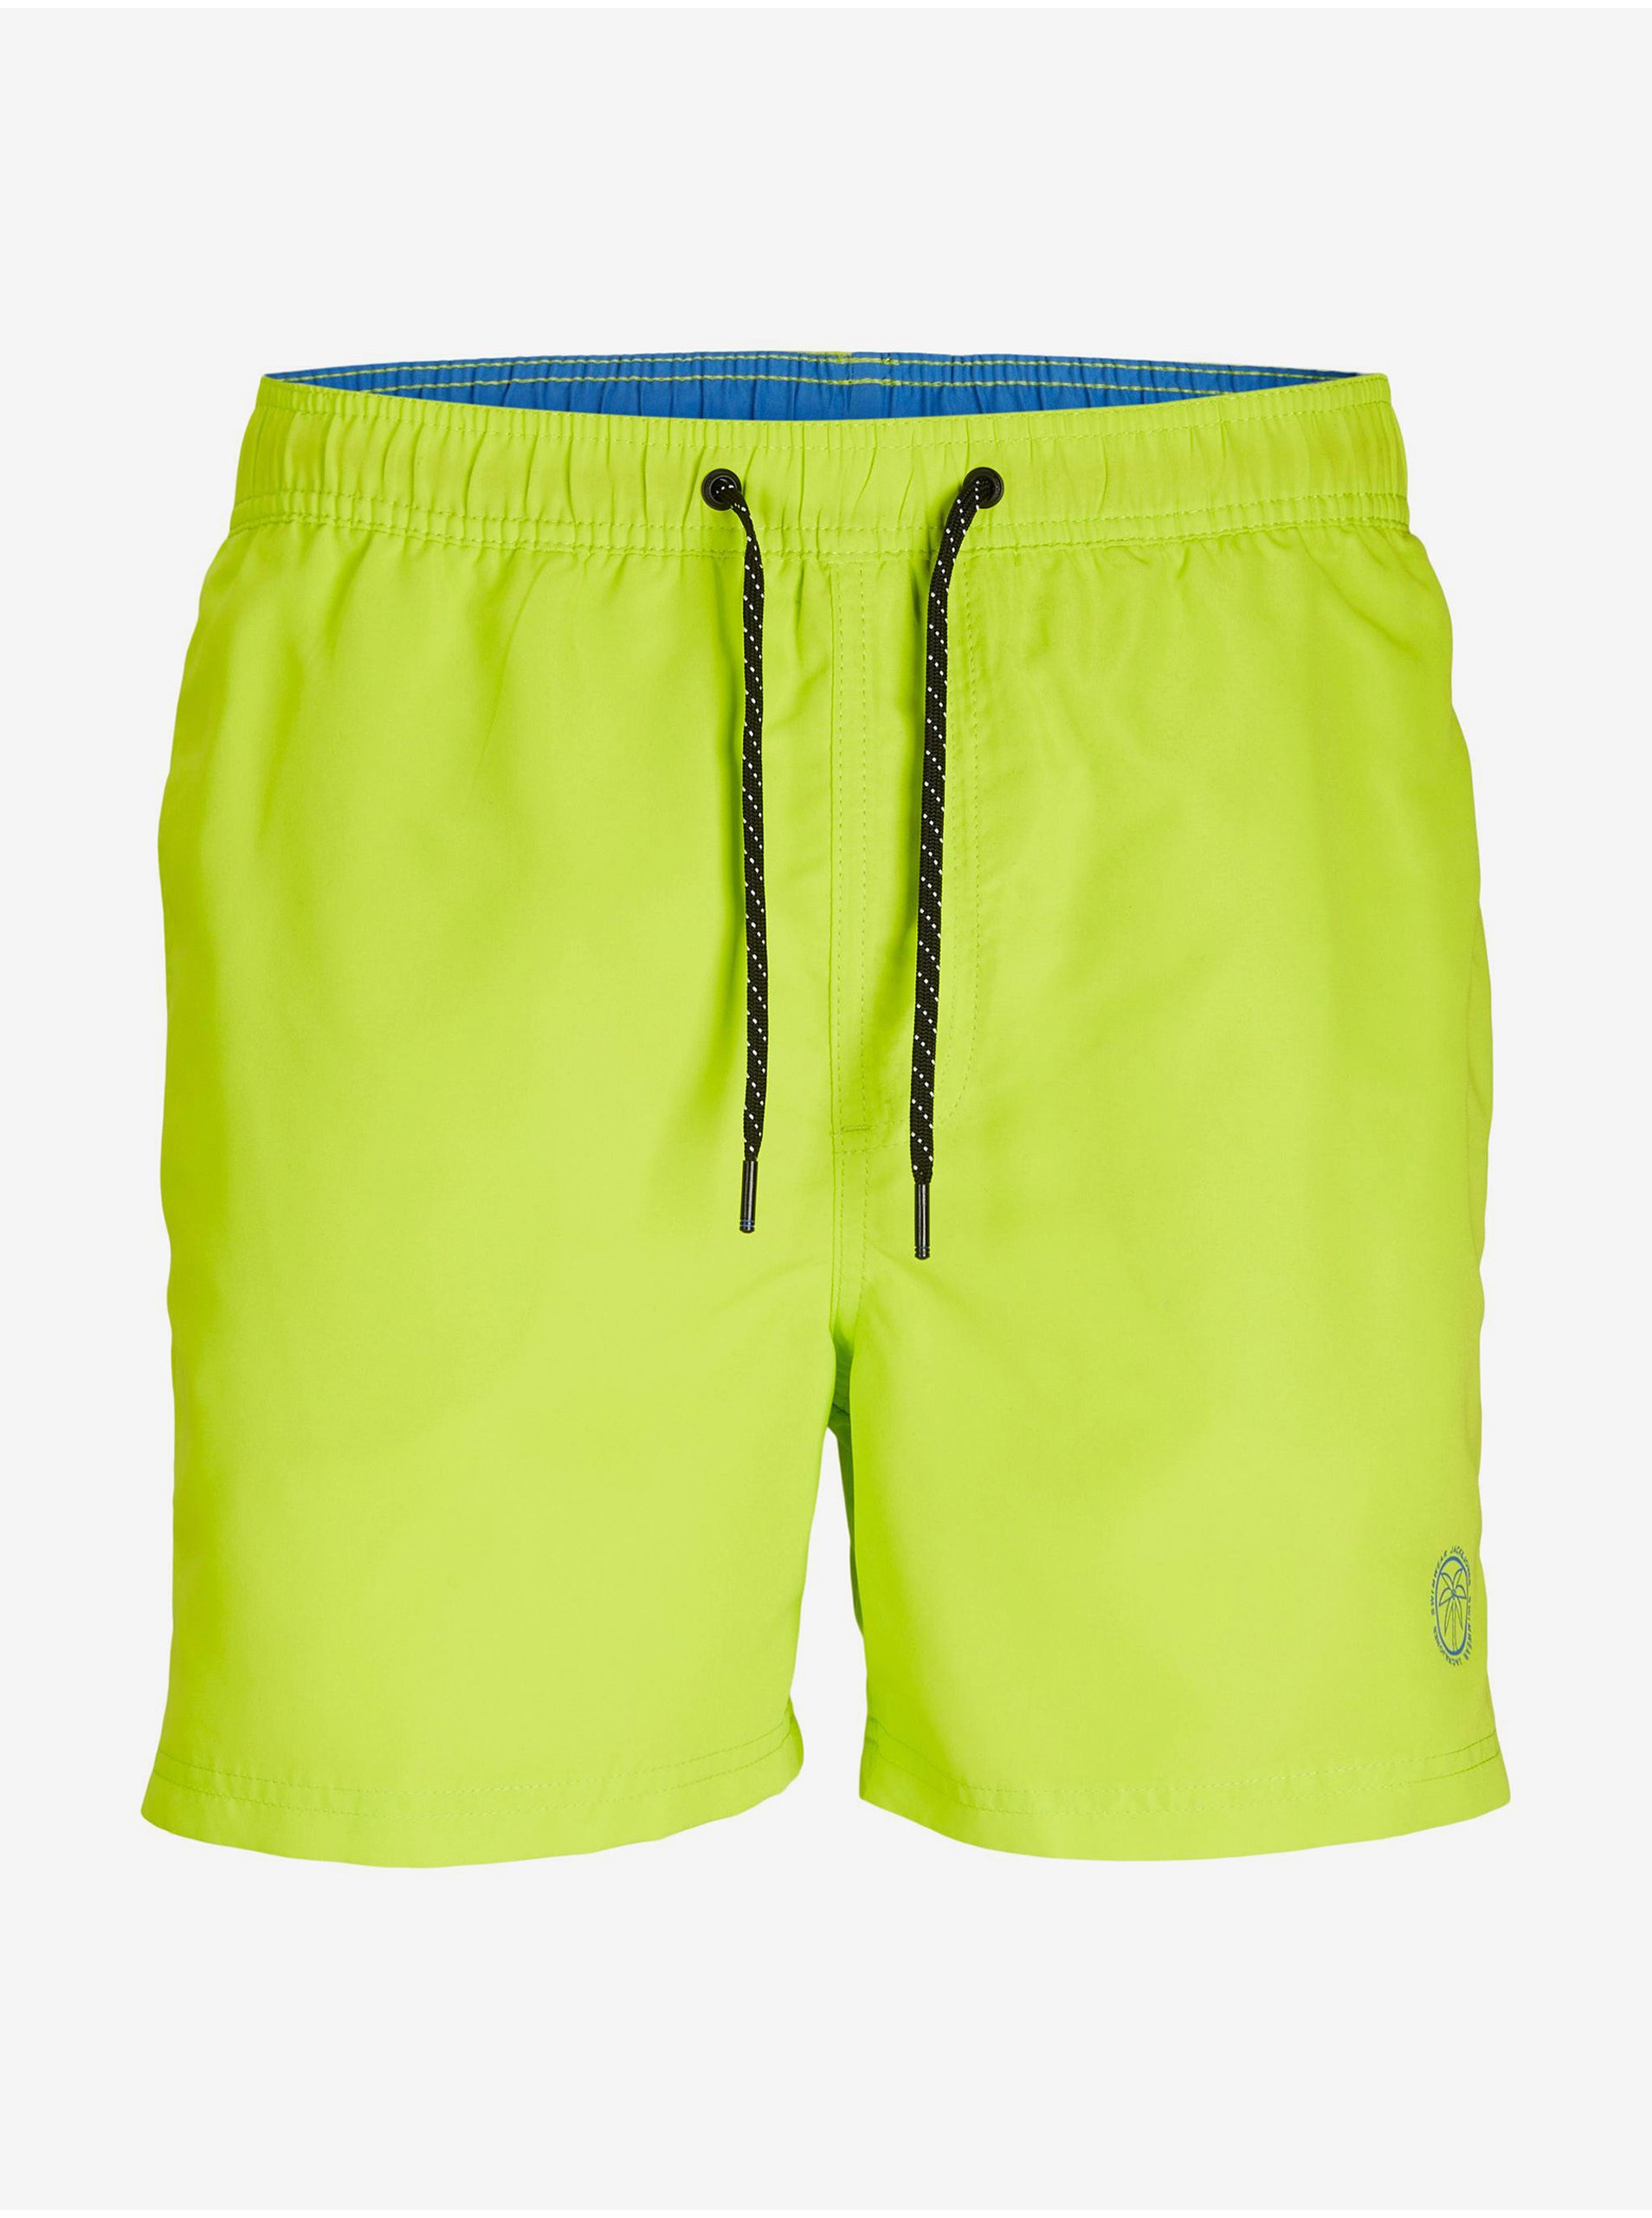 Neon Yellow Mens Swimwear Jack & Jones Fiji - Men